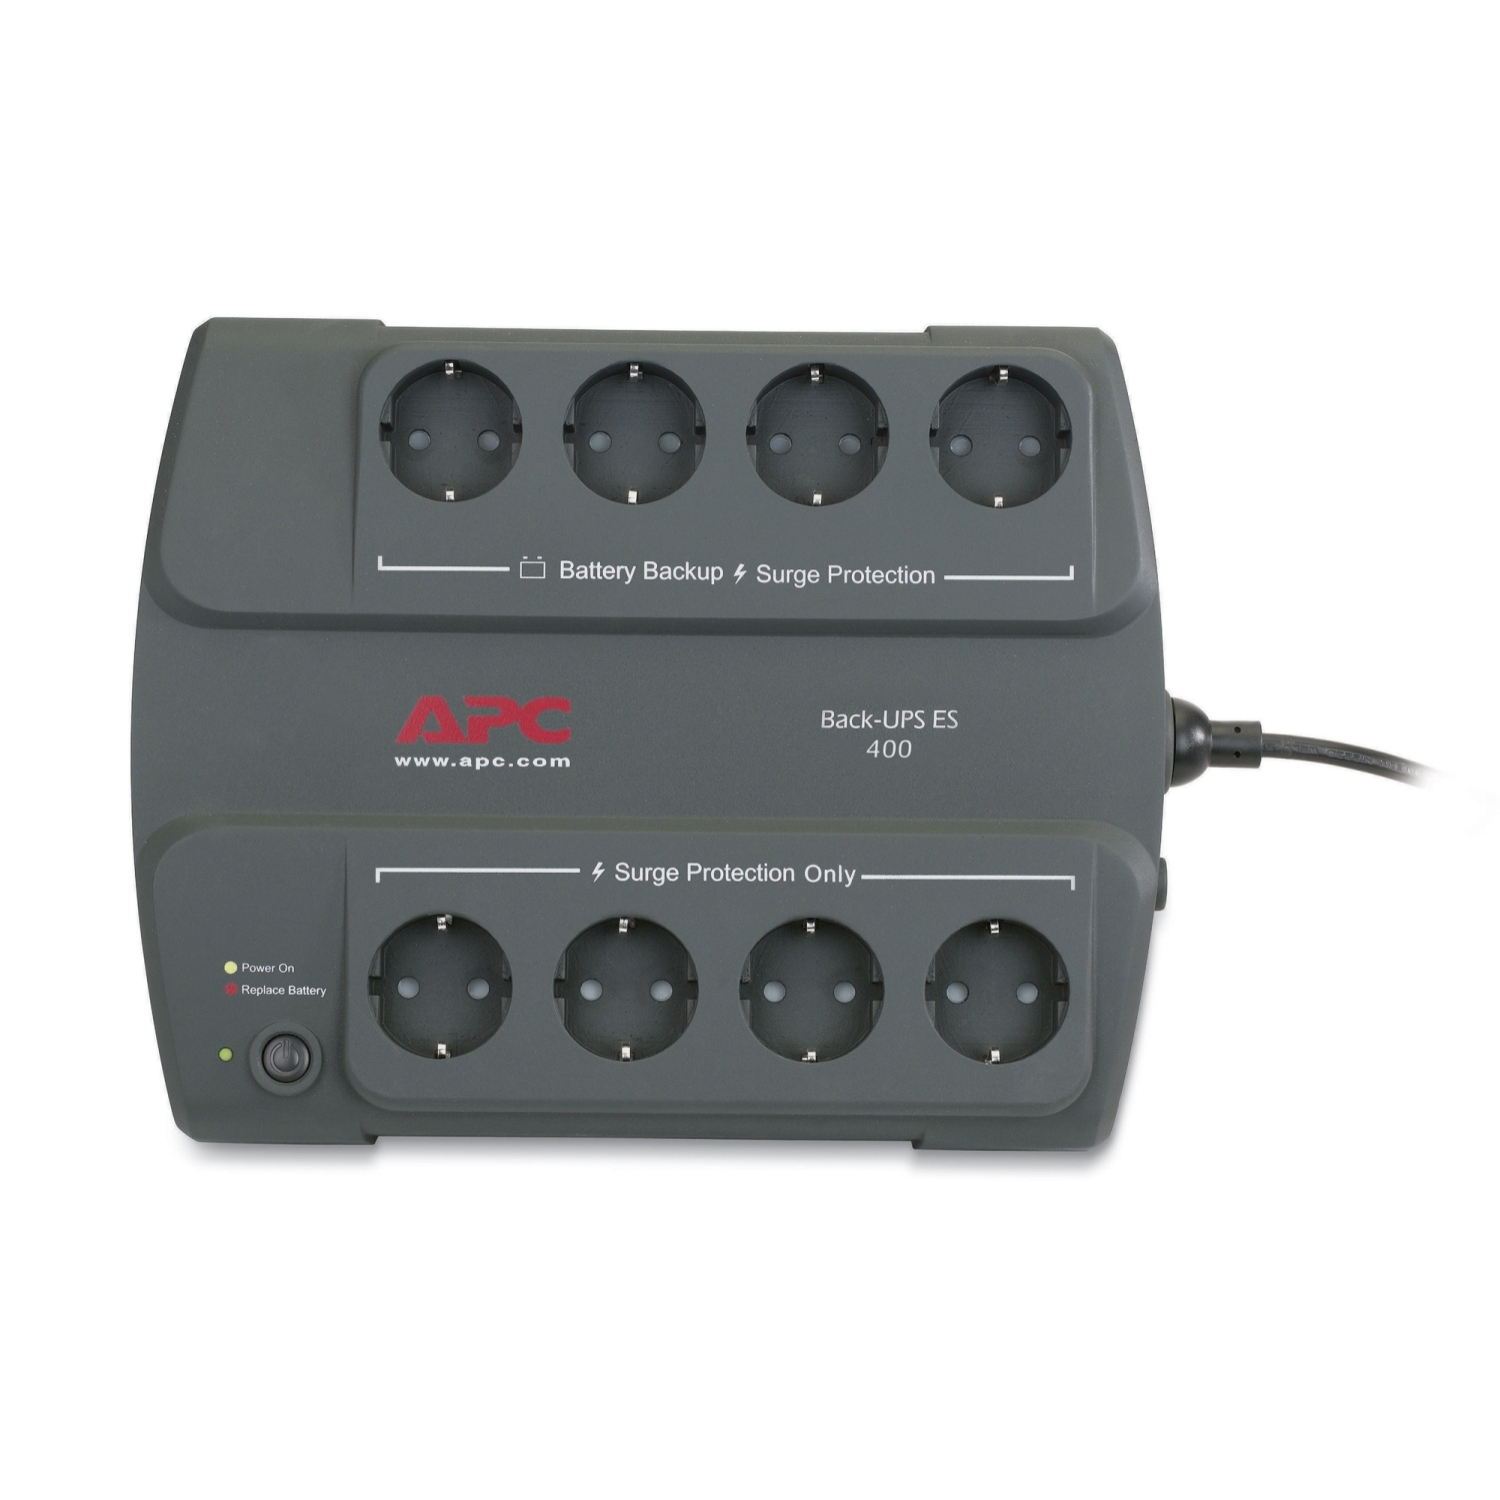 APC Back-UPS ES325 - BE325-GR - Sistema de alimentación